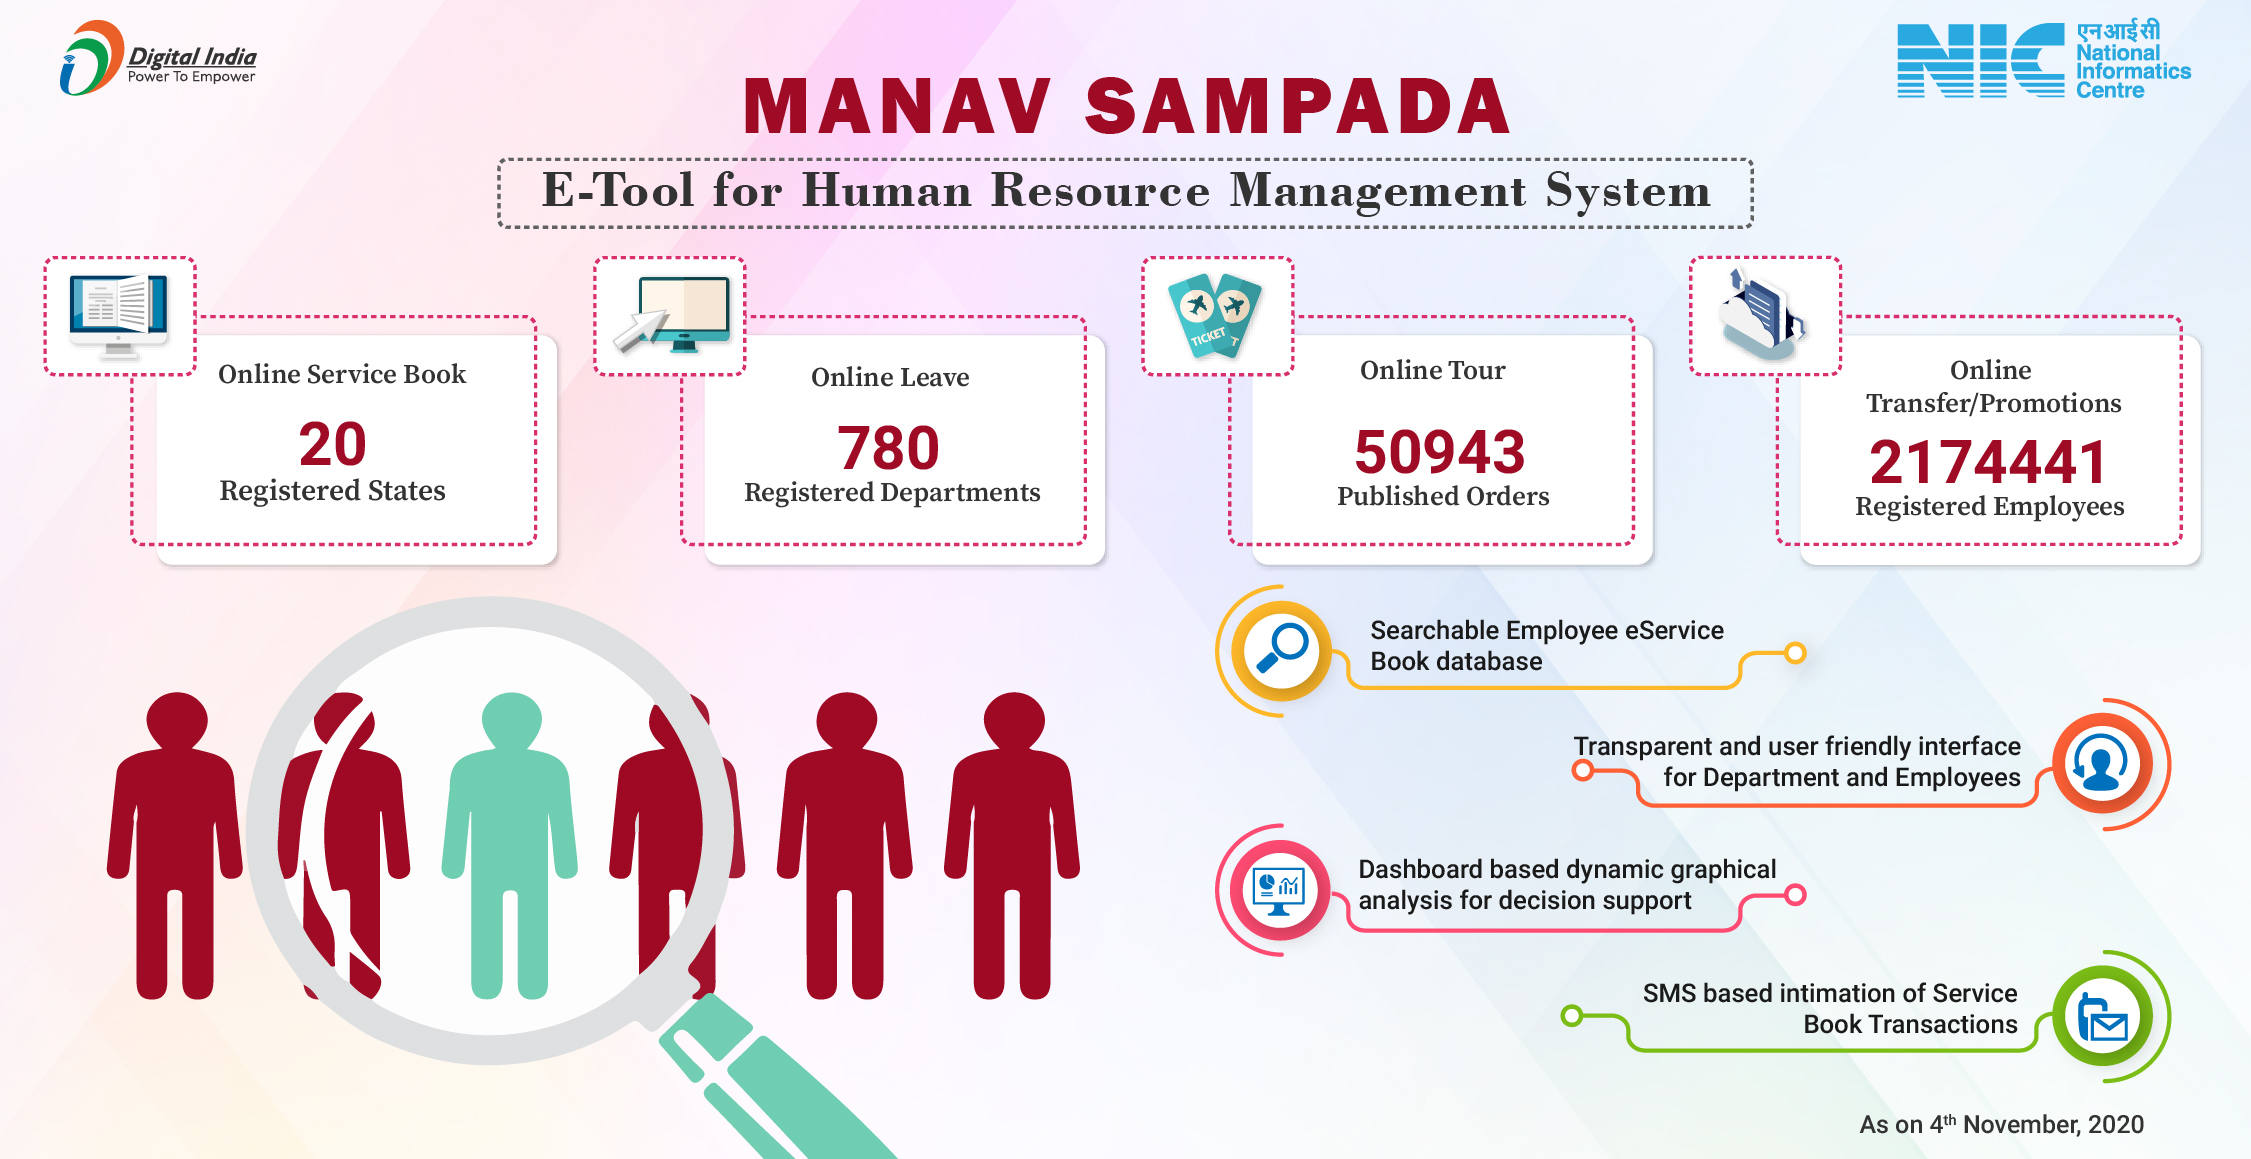 मानव संपदा – मानव संसाधन प्रबंधन प्रणाली के लिए ई-टूल